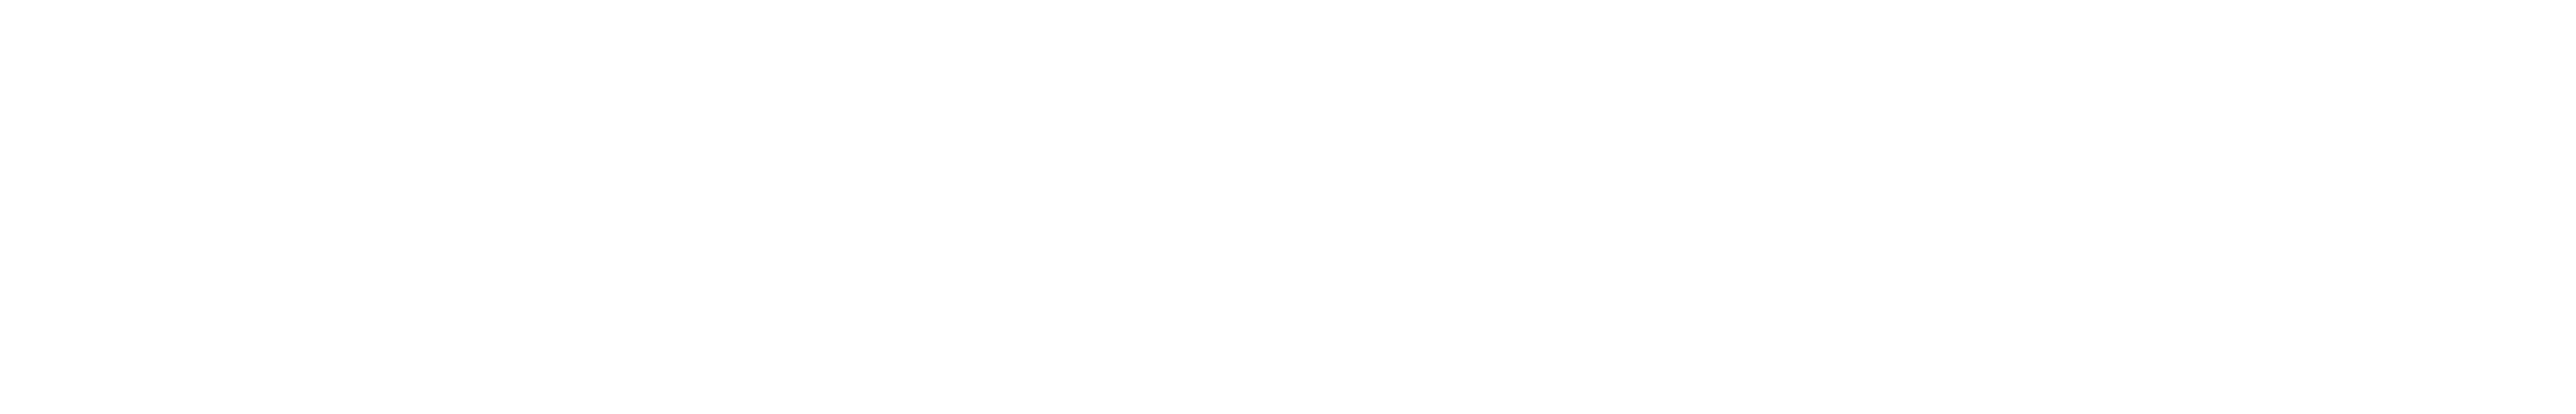 Cleanovators Virtual Summit Whiteout Logo 2022